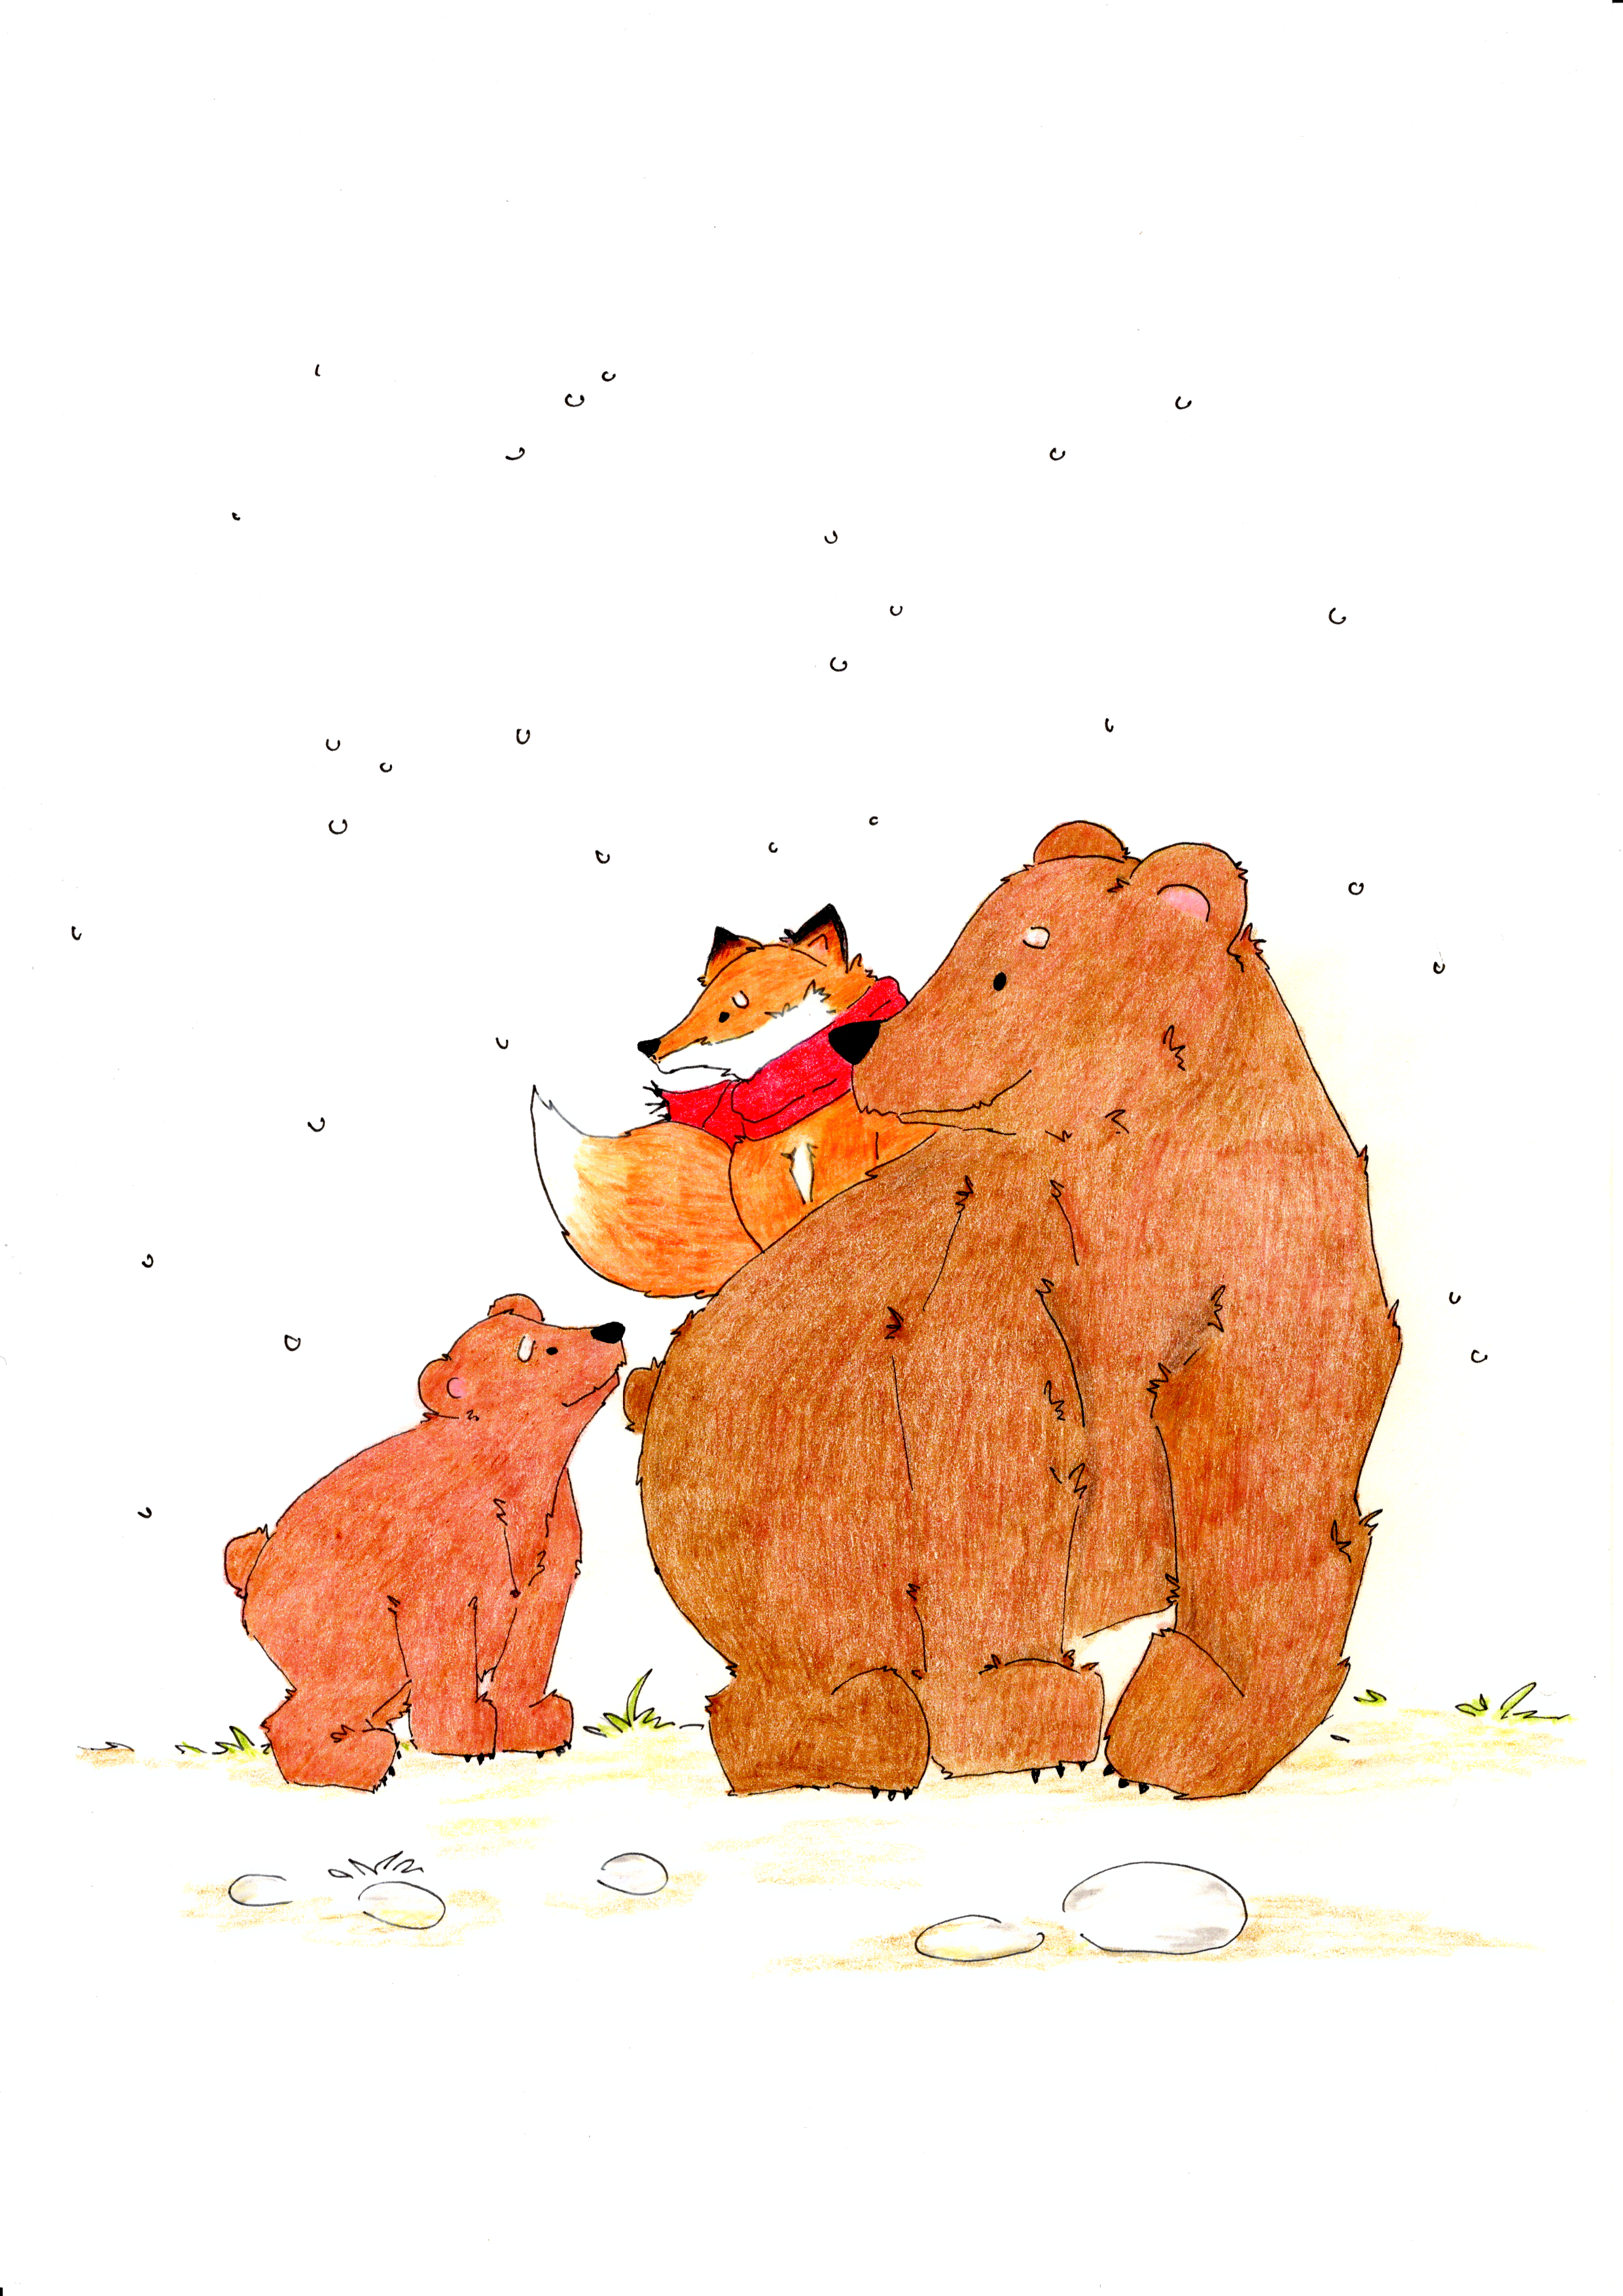 Una Favola di Natale - racconto illustrato - mamma orsa accompagna volpe a casa - disegno a matita